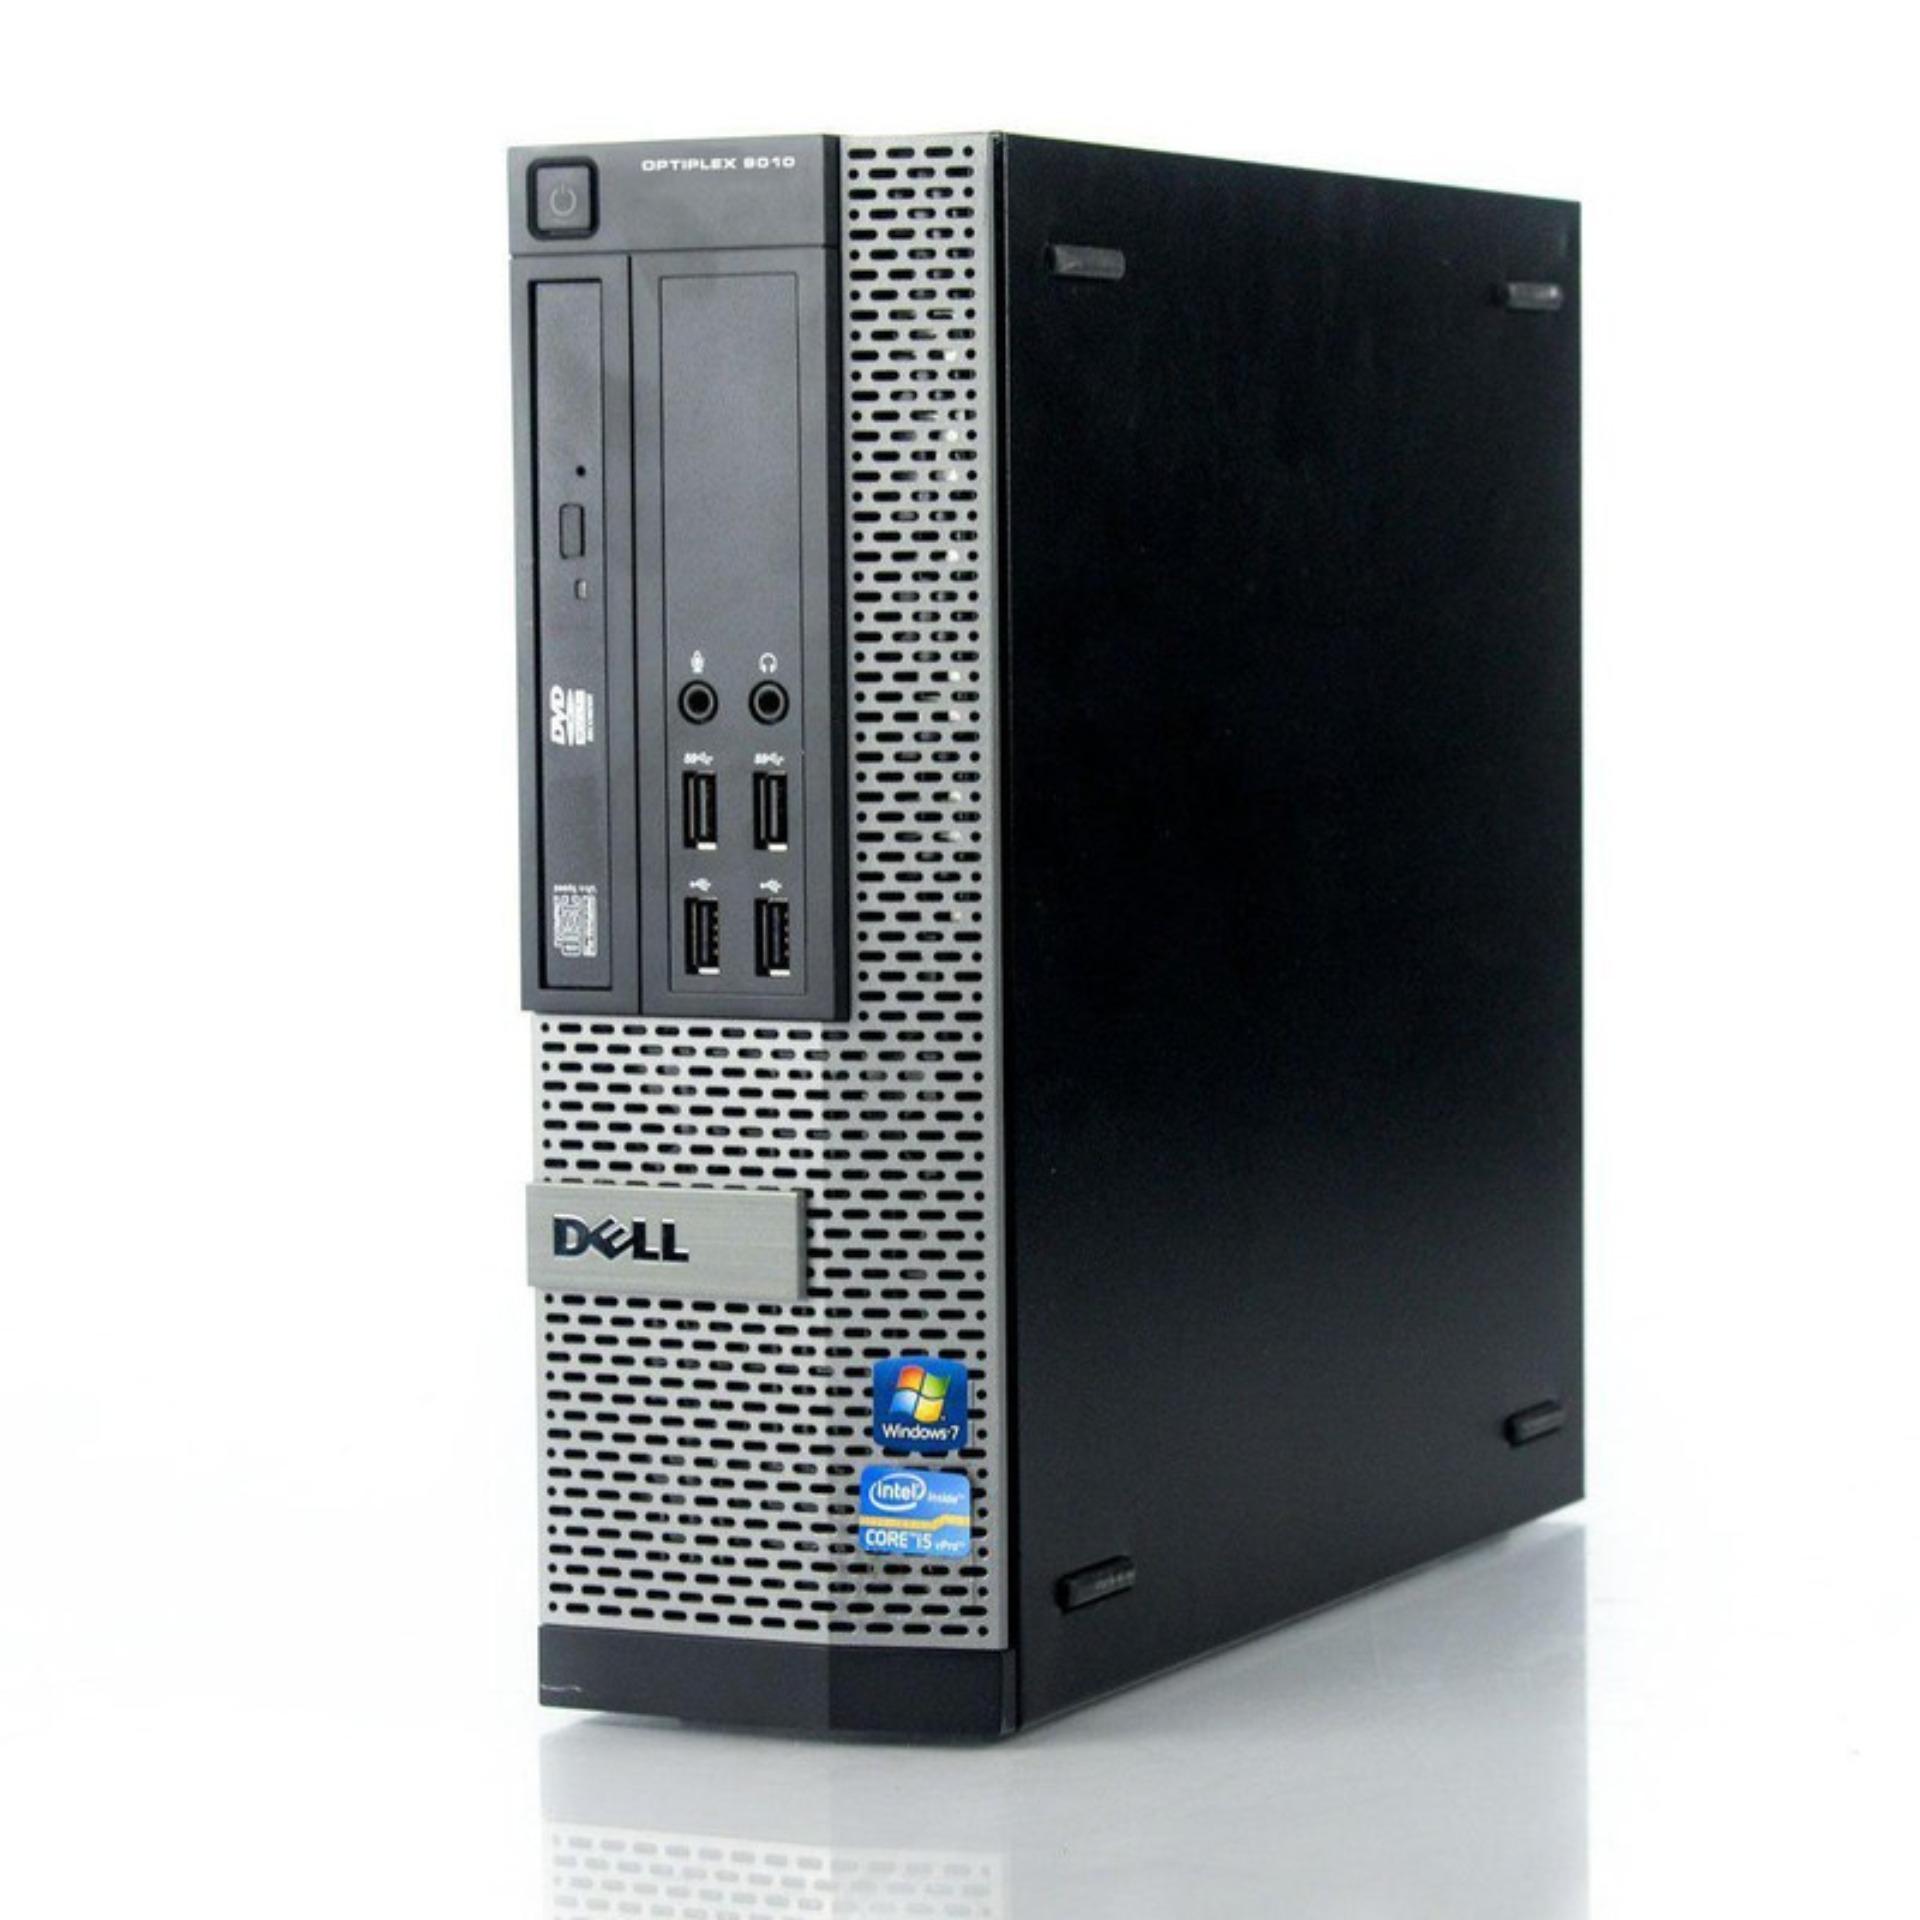 Máy Tính Đồng Bộ Dell Optiplex 9010, Core I5 3470S, Ram 4Gb, Dvd, Hdd 320Gb, Có Hộp, Bảo Hành 2...